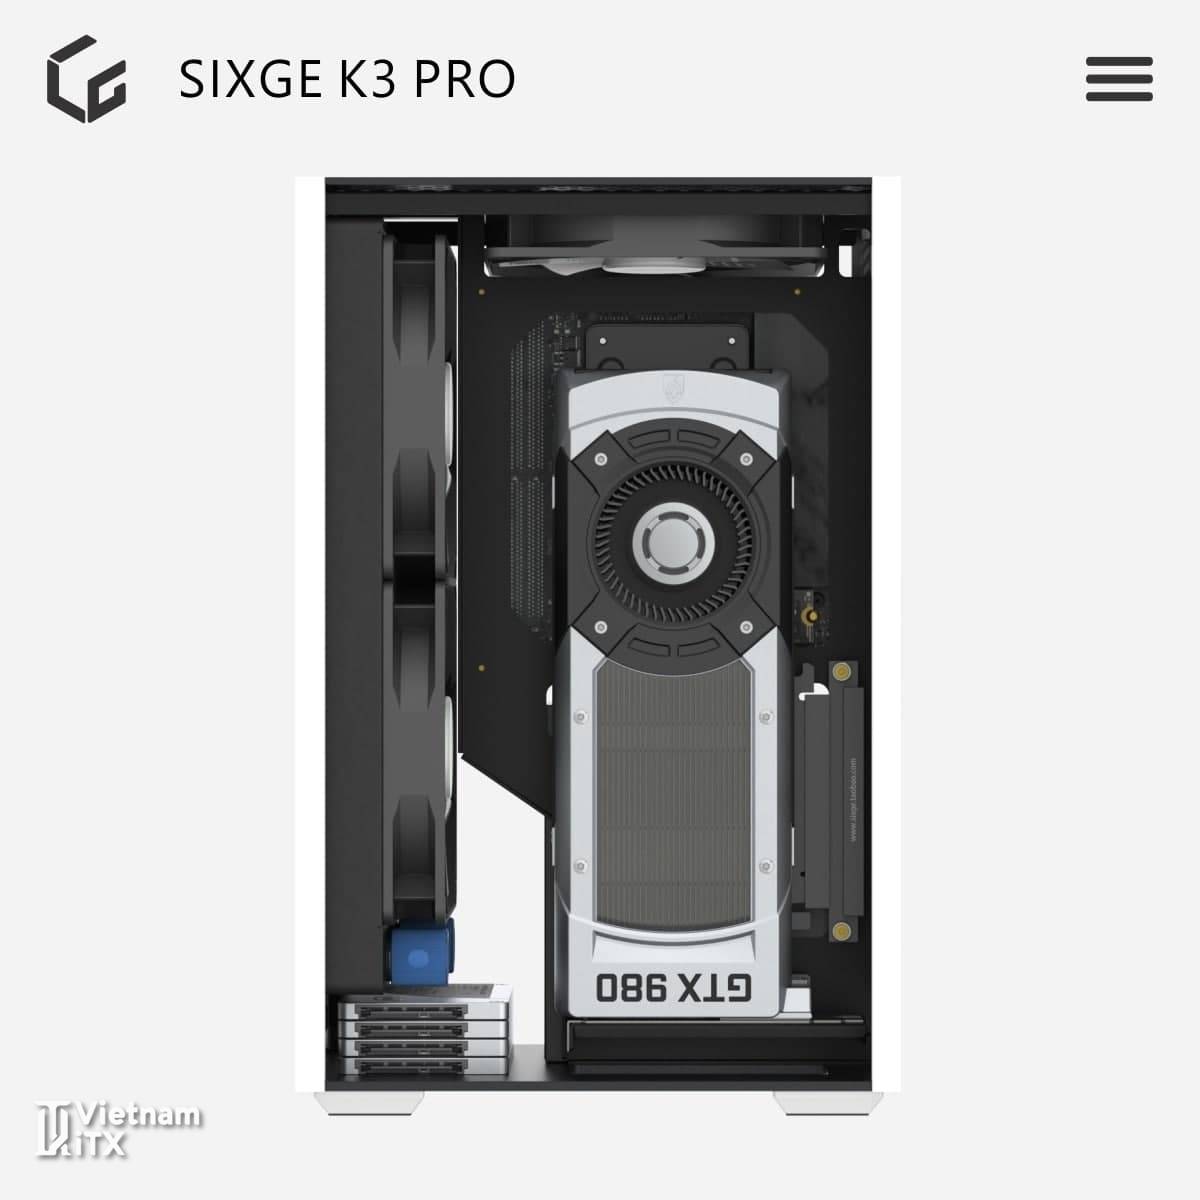 SIXGE K3 Pro itx xây dựng dàn máy mini pc hoàn hảo nhất 2022 (1).jpg